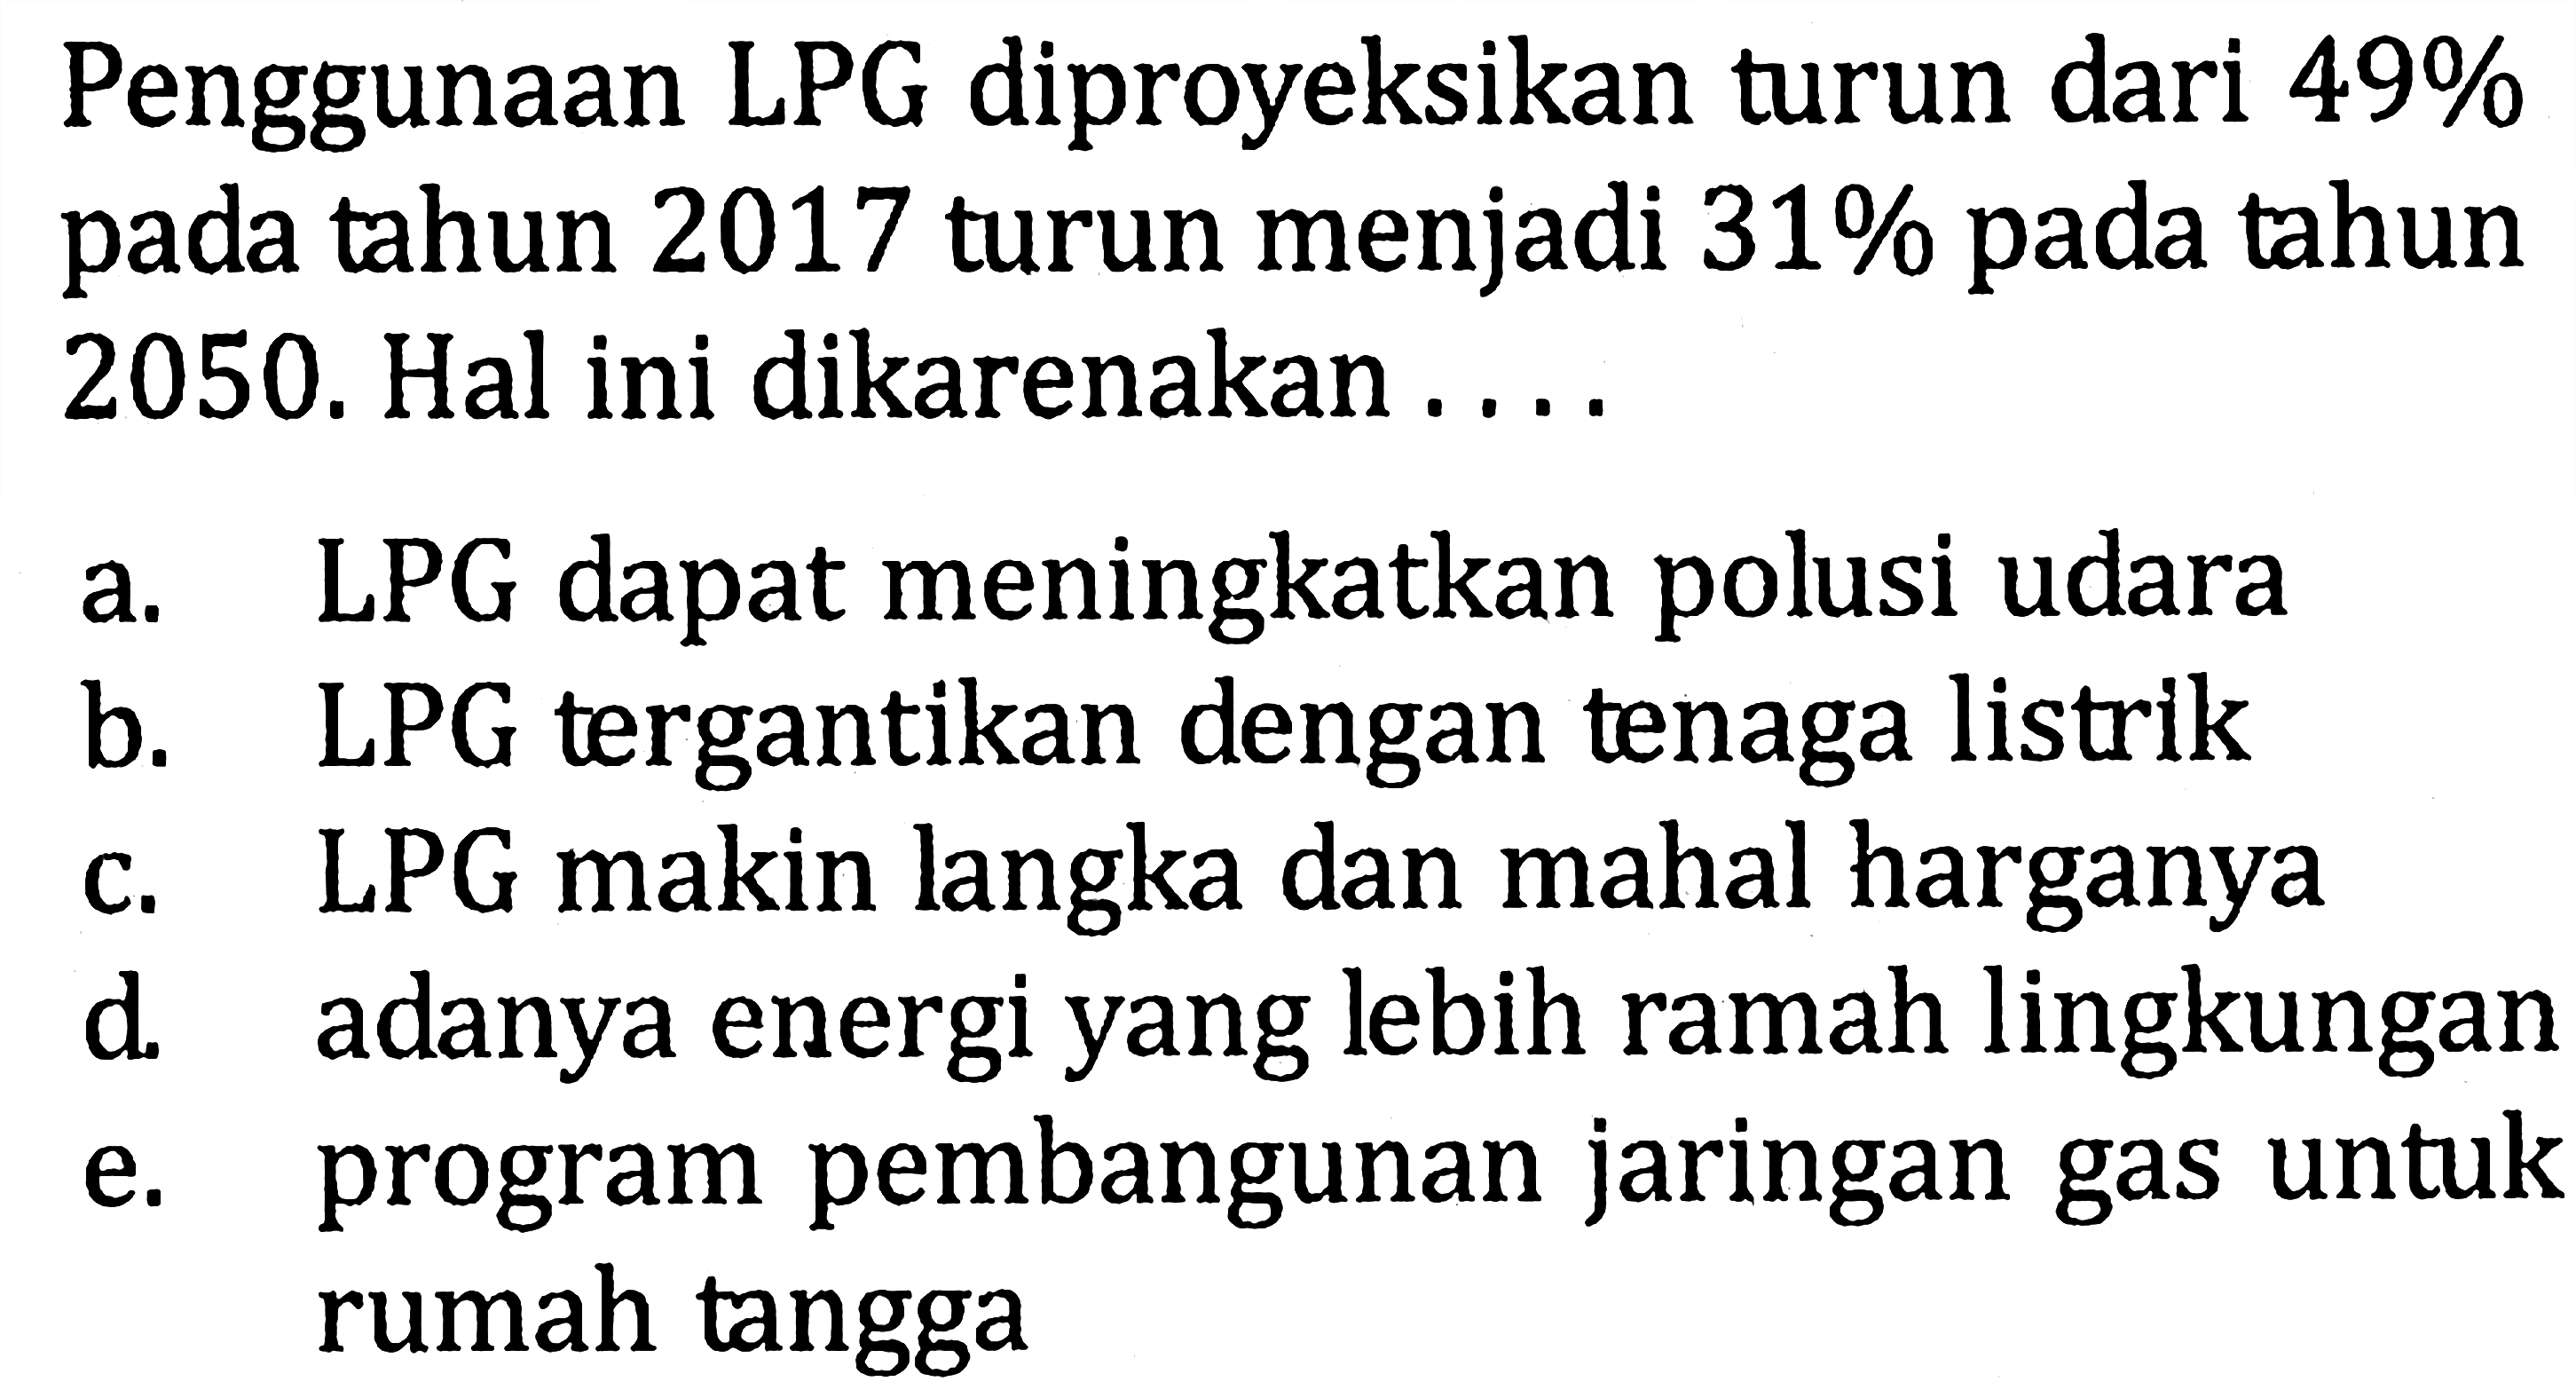 Penggunaan LPG diproyeksikan turun dari 49% pada tahun 2017 turun menjadi 31% pada tahun 2050. Hal ini dikarenakan .... 